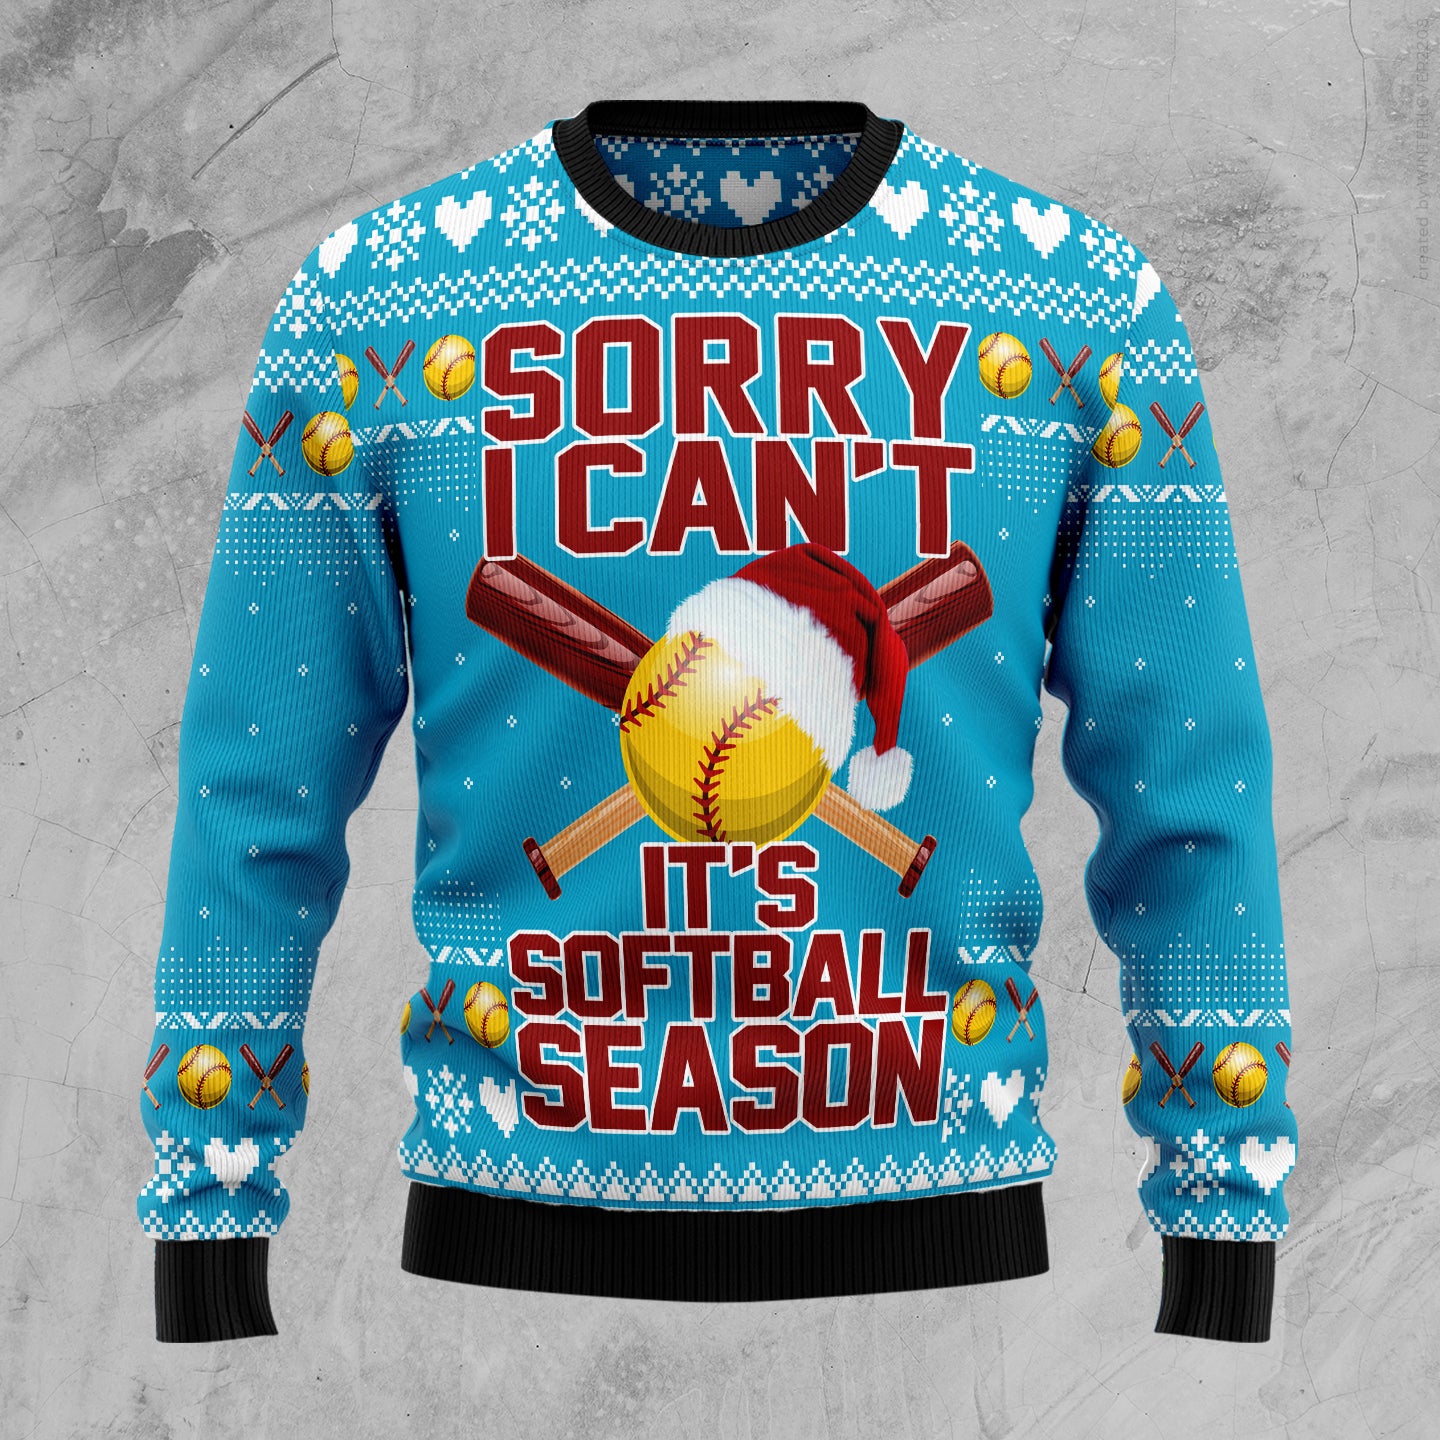 Soft Ball Season TG5116 Ugly Christmas Sweater